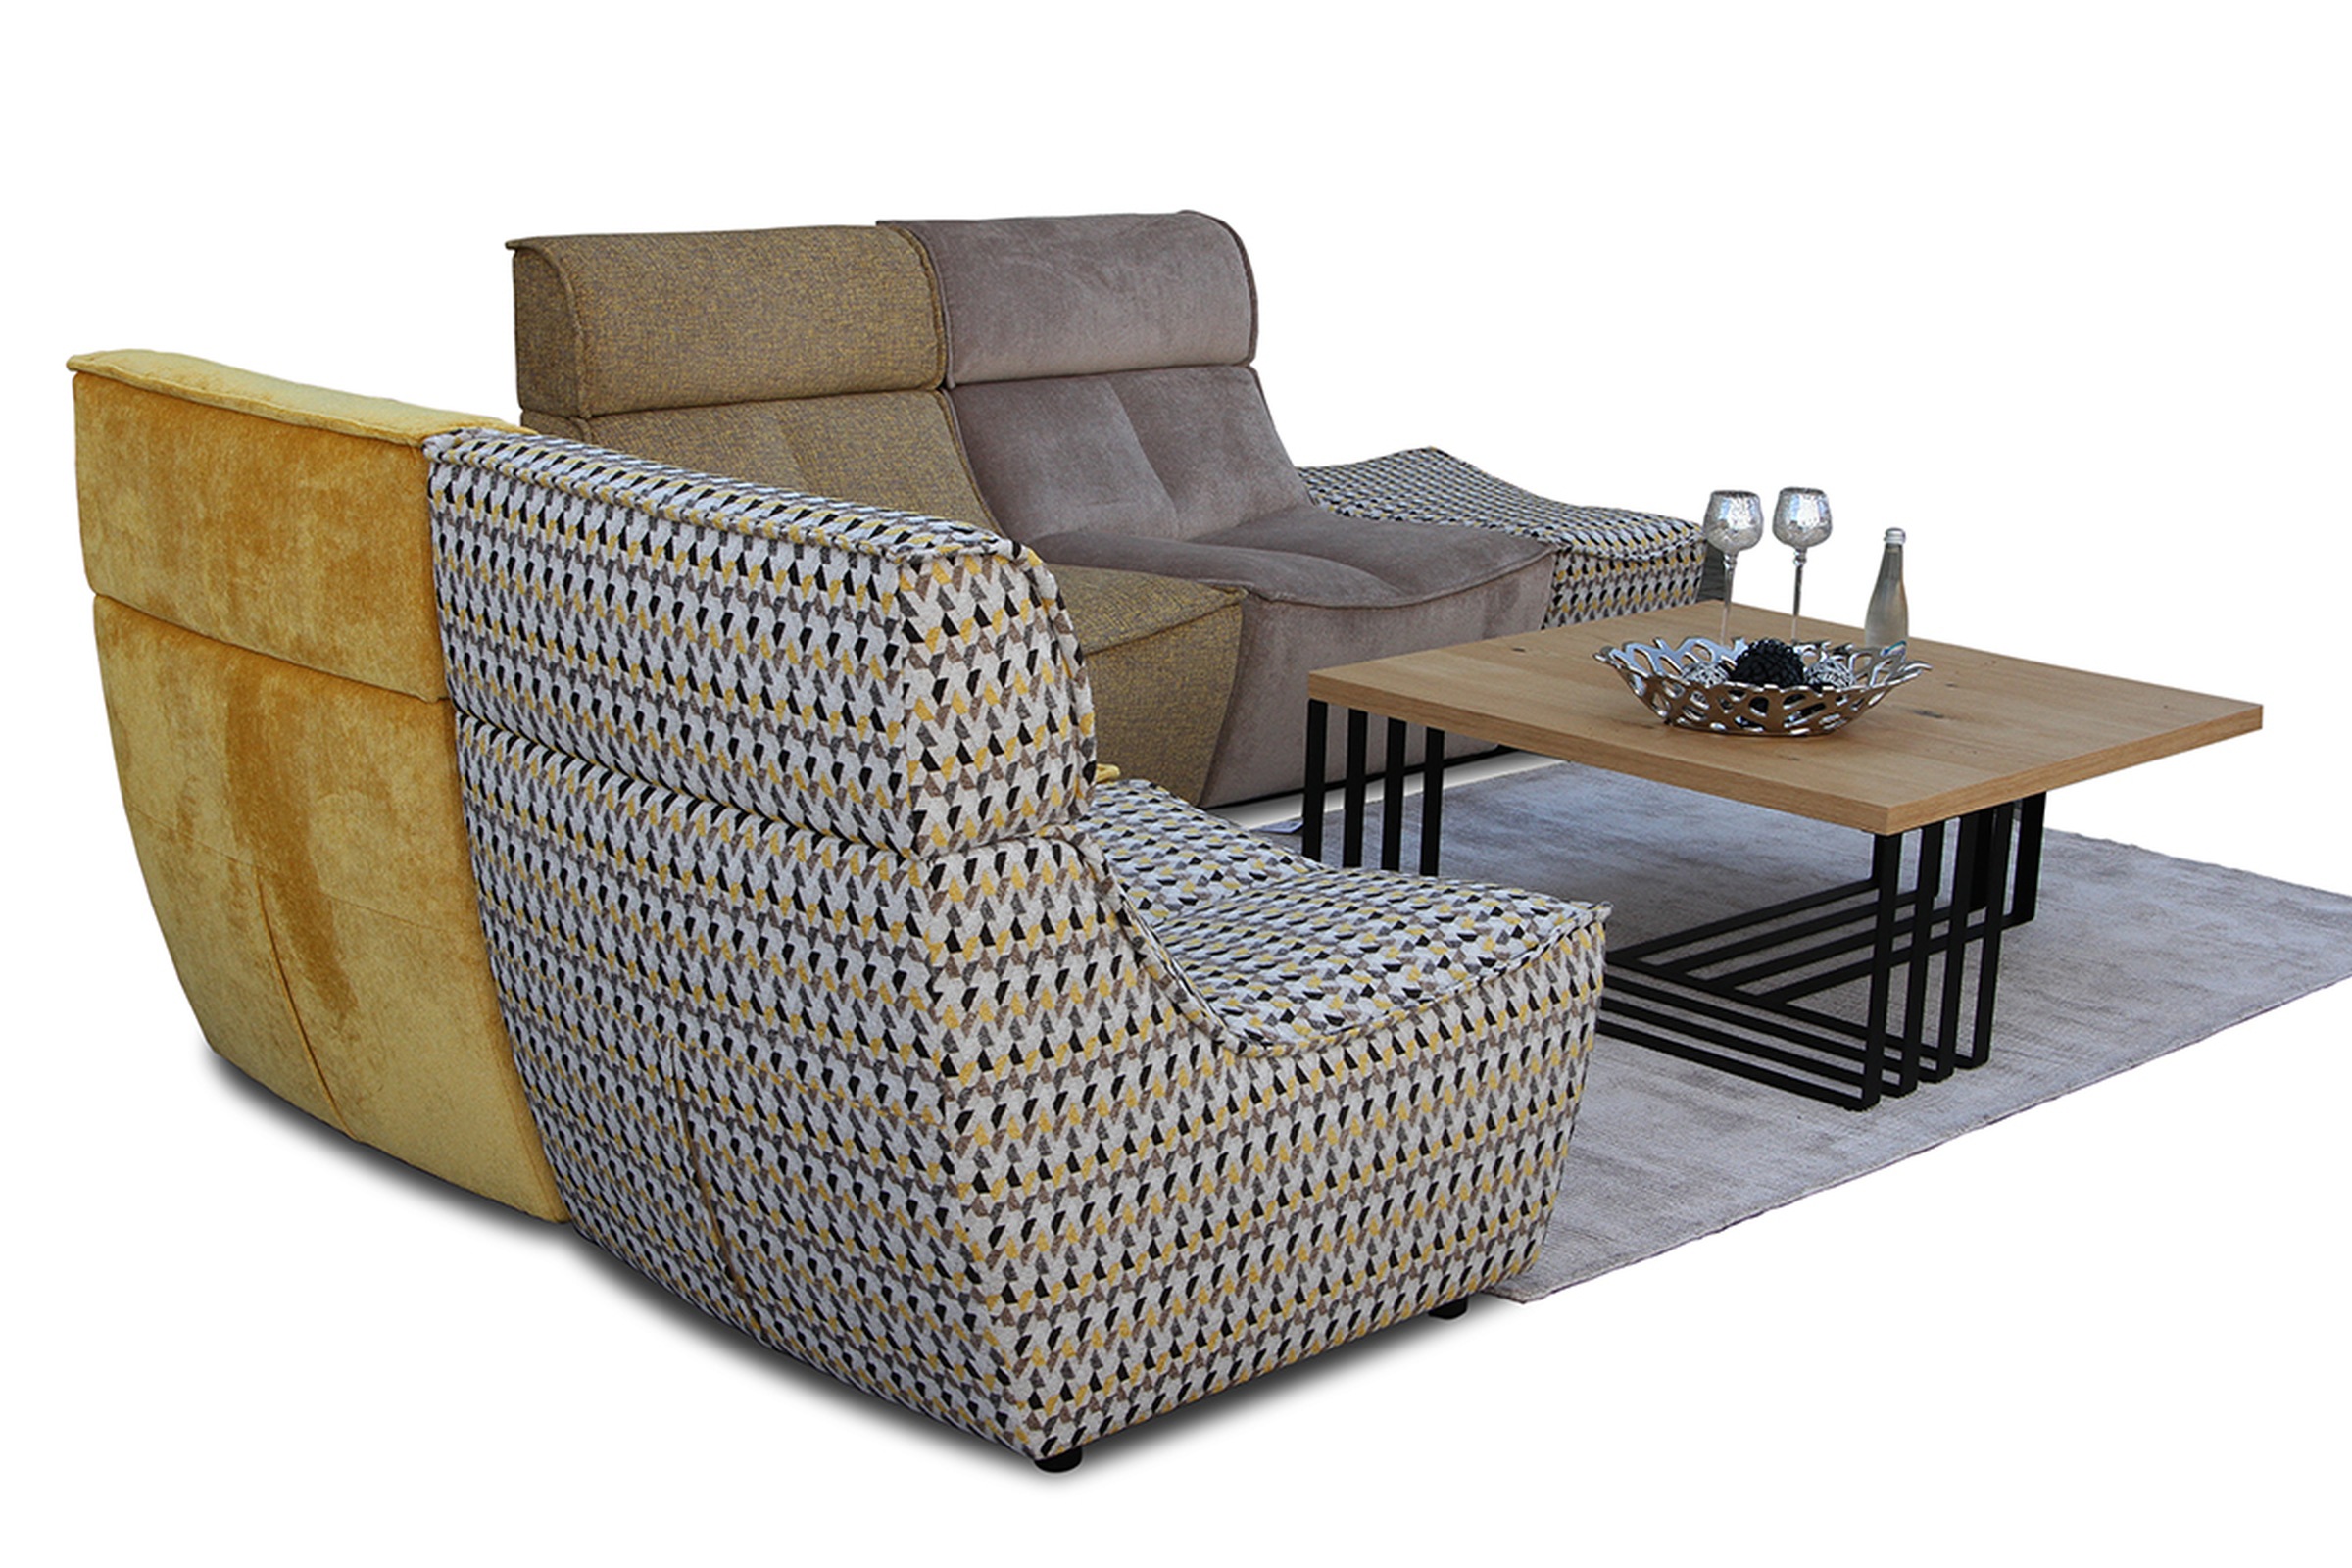 Viva - sofa modułowa tapicerowana w orginalnej tkaninie, możliwość postawienia na środku pokoju, tapicerowanie i wykończenie z każdej strony